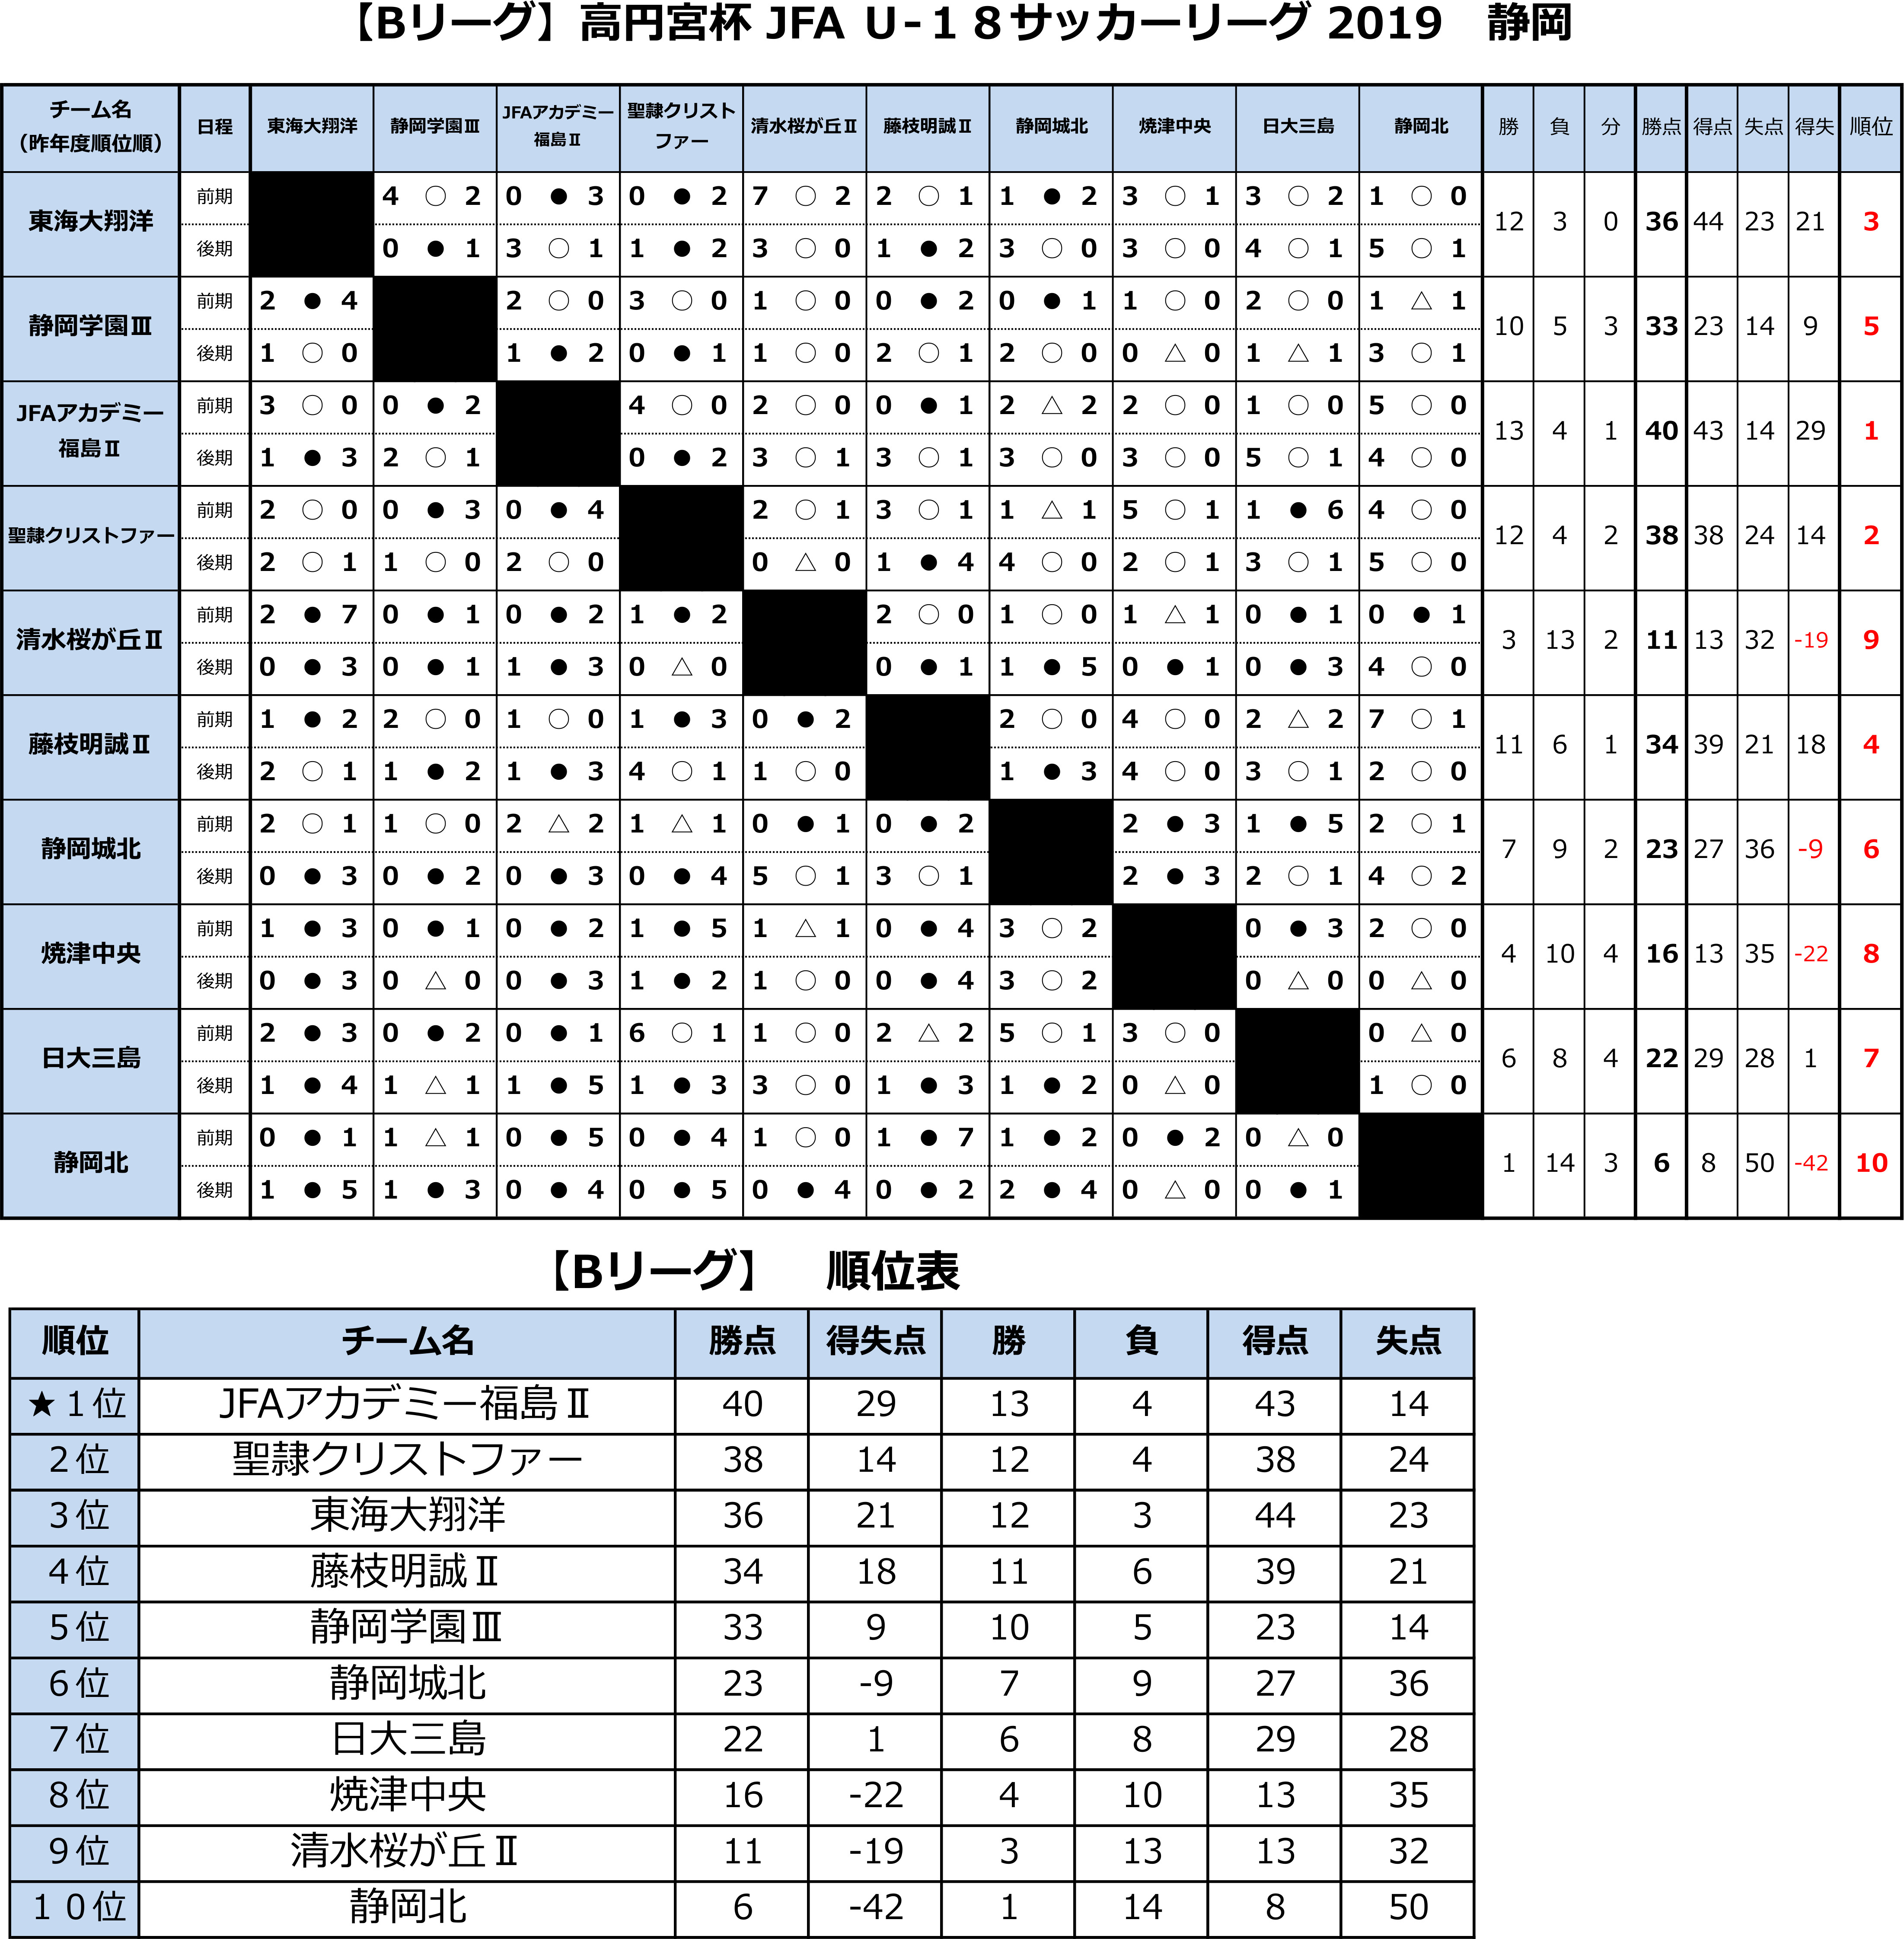 高円宮杯 JFA U-18サッカーリーグ2019 静岡 　Bリーグ後期 トーナメント表